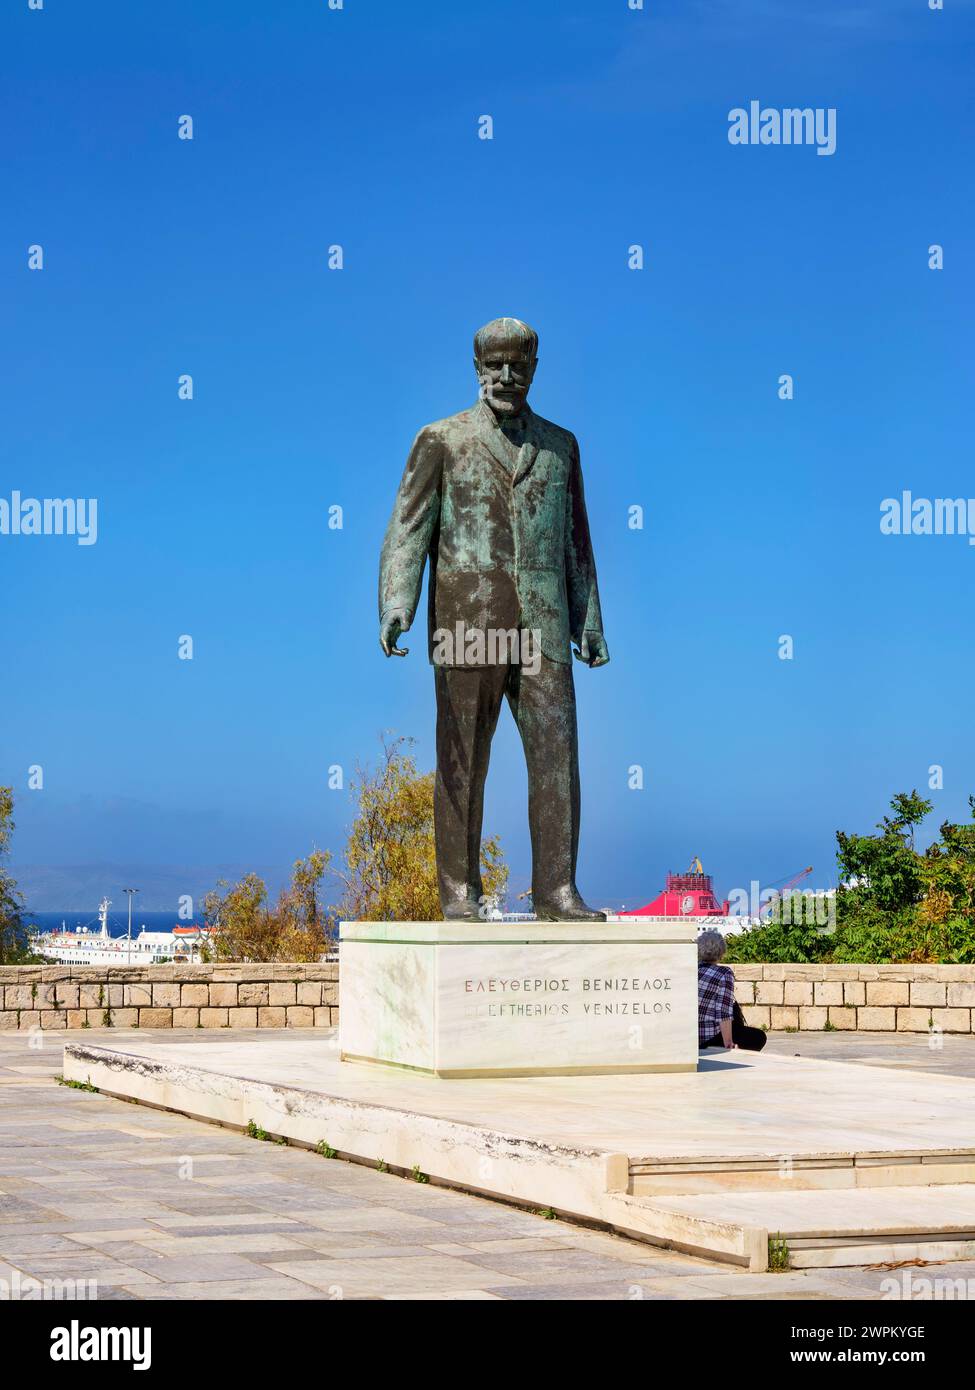 Statua di Eleftherios Venizelos, città di Heraklion, Creta, Isole greche, Grecia, Europa Foto Stock